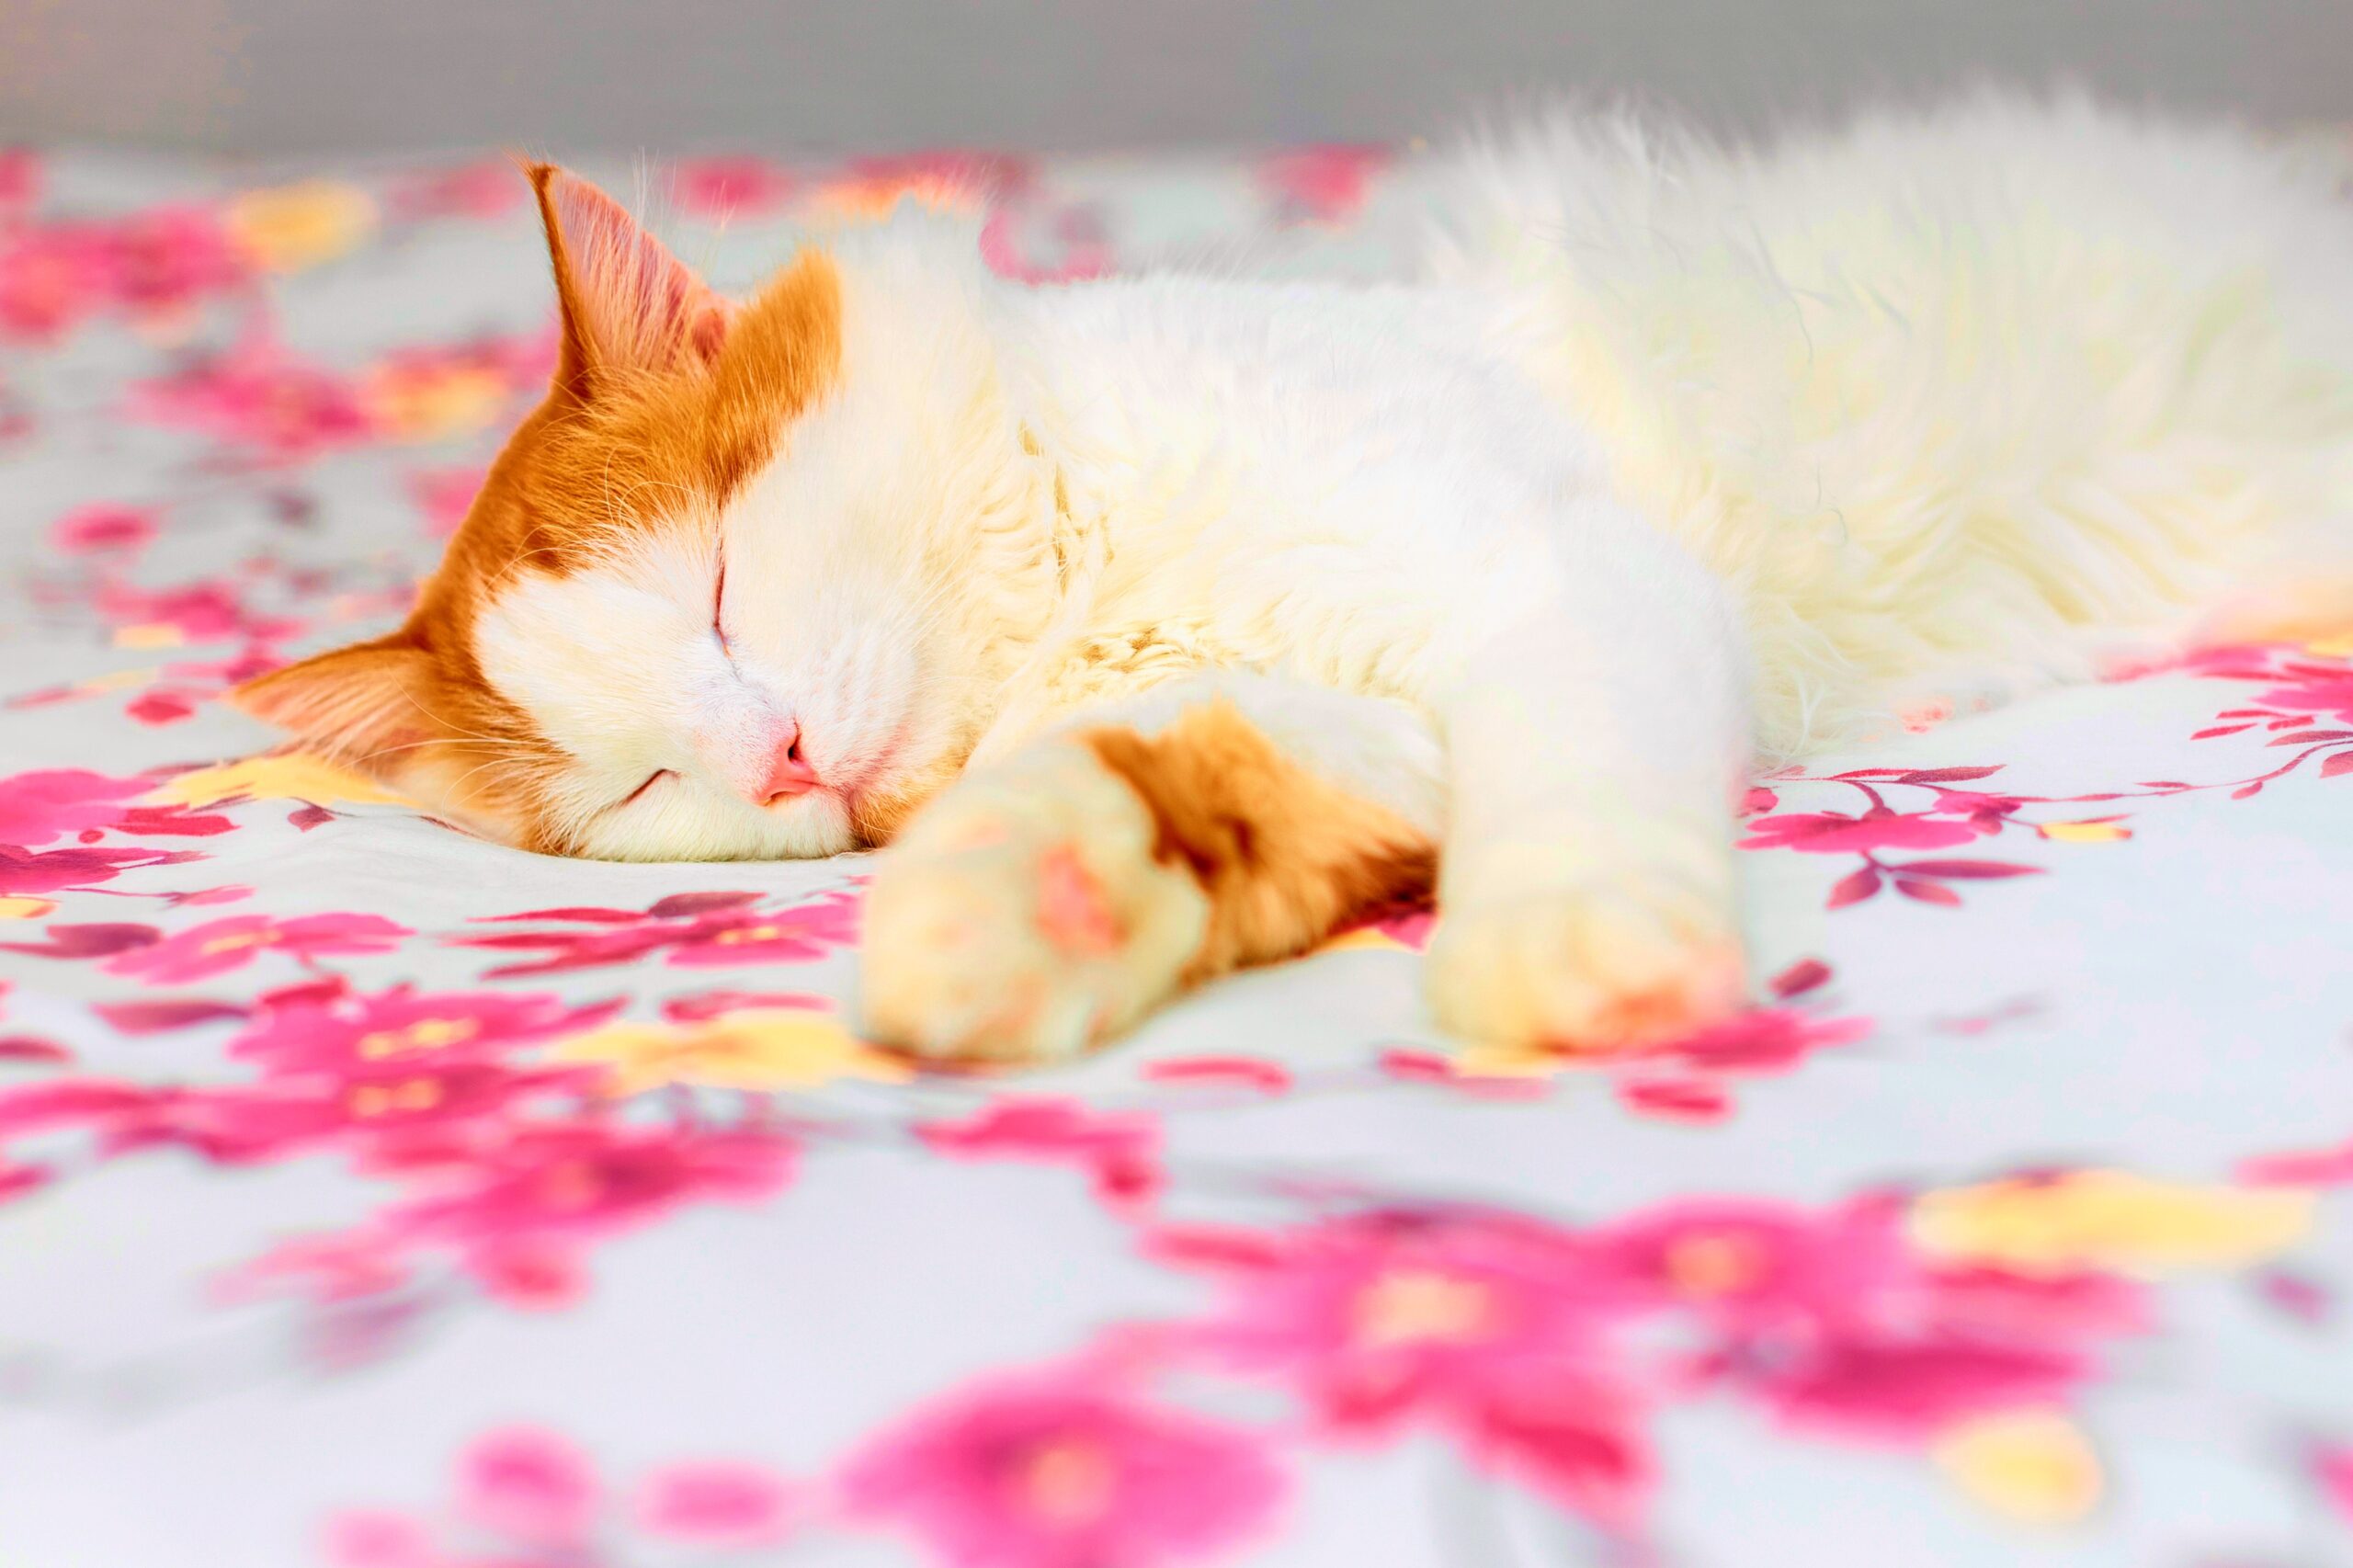 <img src="ginger.jpg" alt="ginger and white cat sleeping on bed"/>